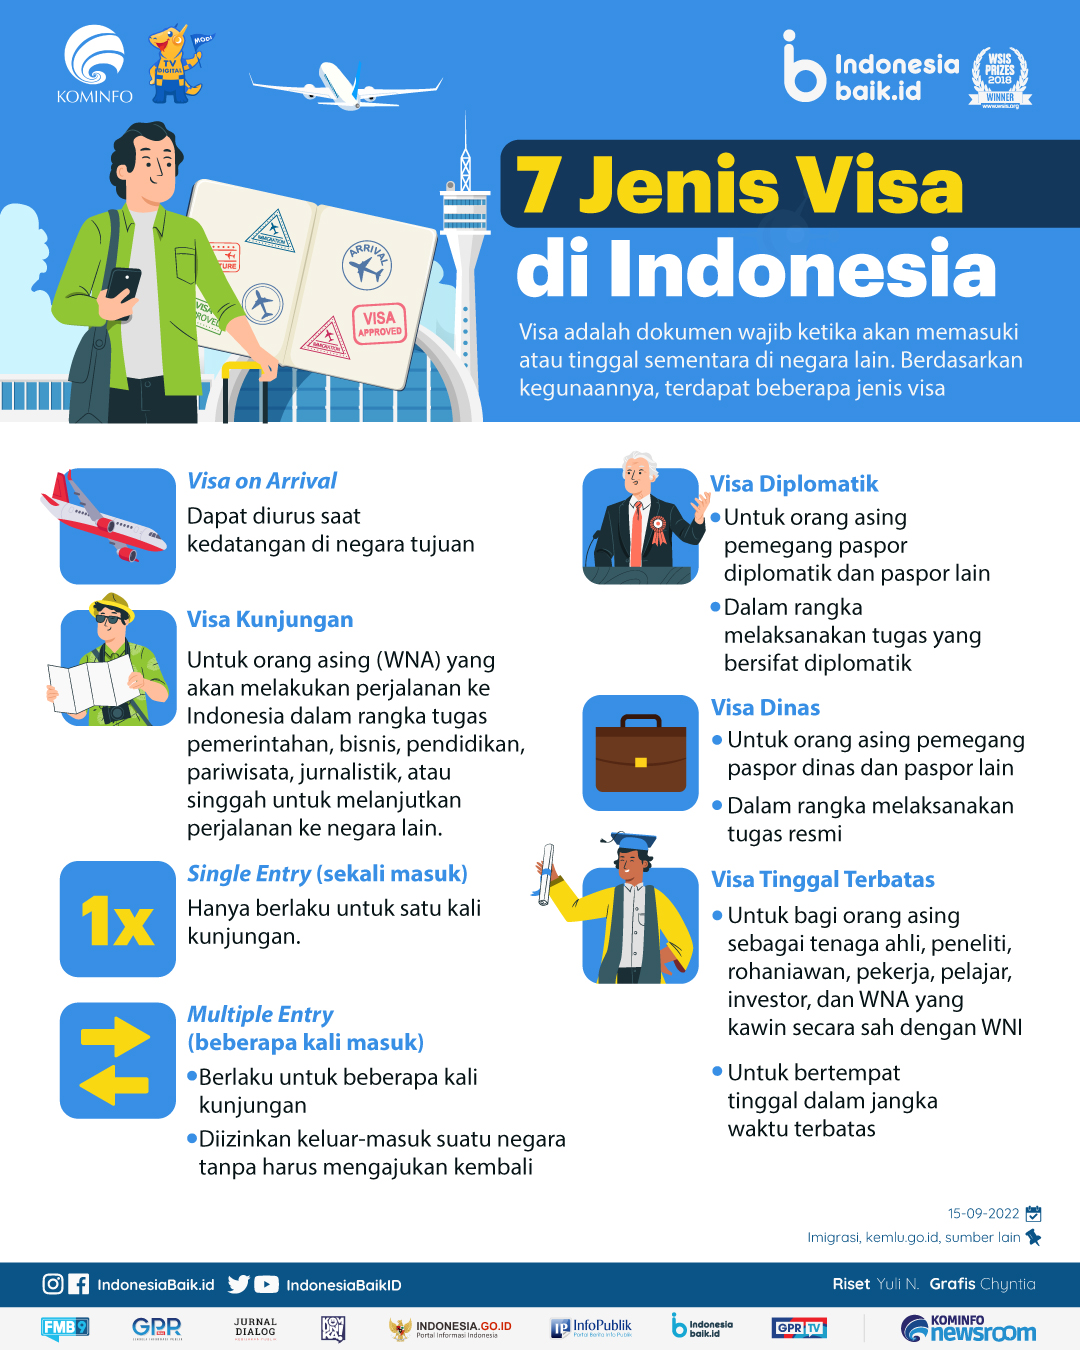 Jenis-jenis visa yang ada di Indonesia